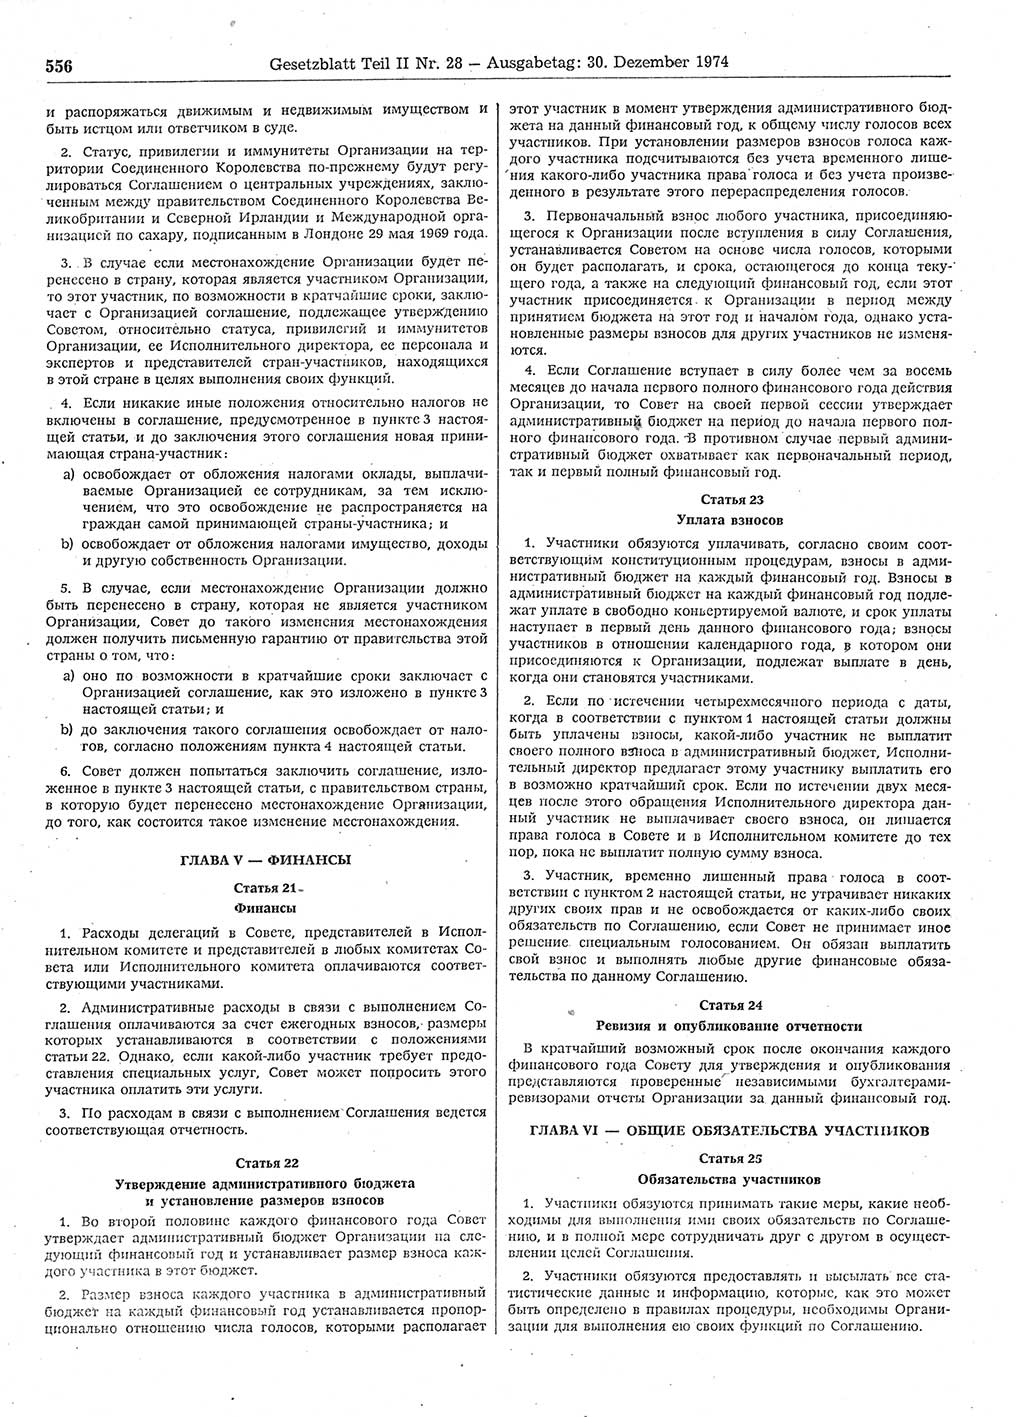 Gesetzblatt (GBl.) der Deutschen Demokratischen Republik (DDR) Teil ⅠⅠ 1974, Seite 556 (GBl. DDR ⅠⅠ 1974, S. 556)